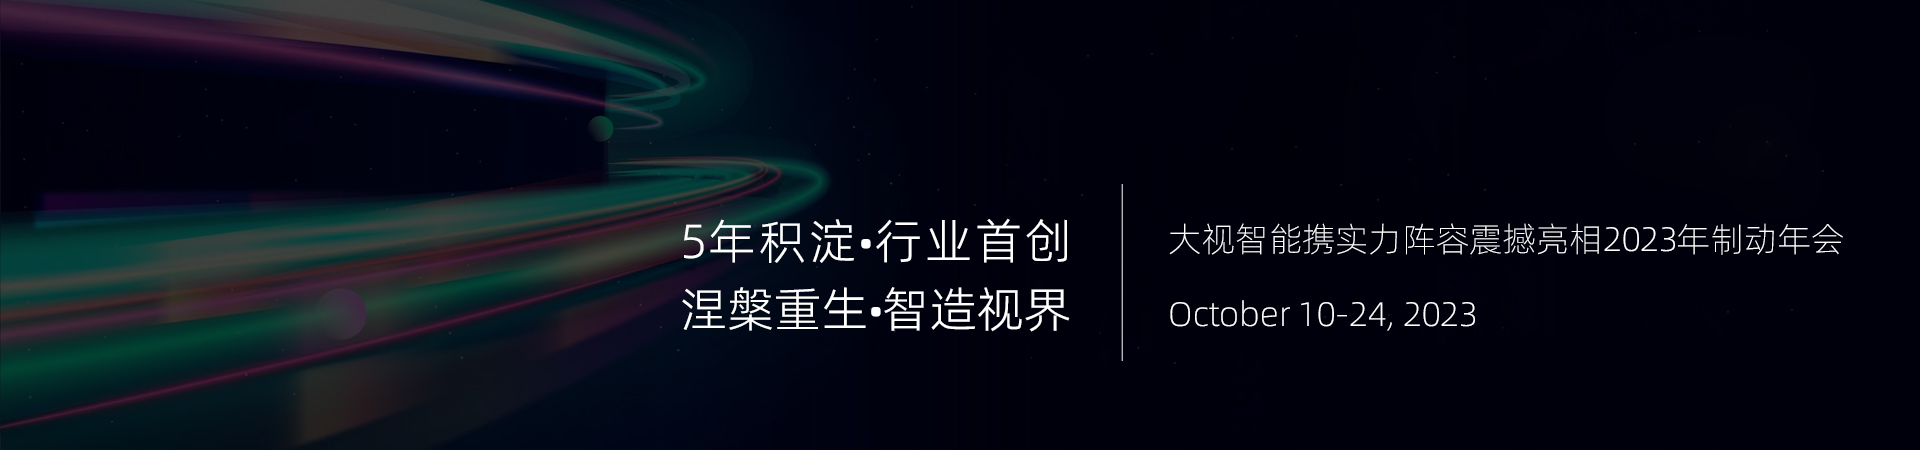 2022上海国际磁性材料与应用产业链展览会